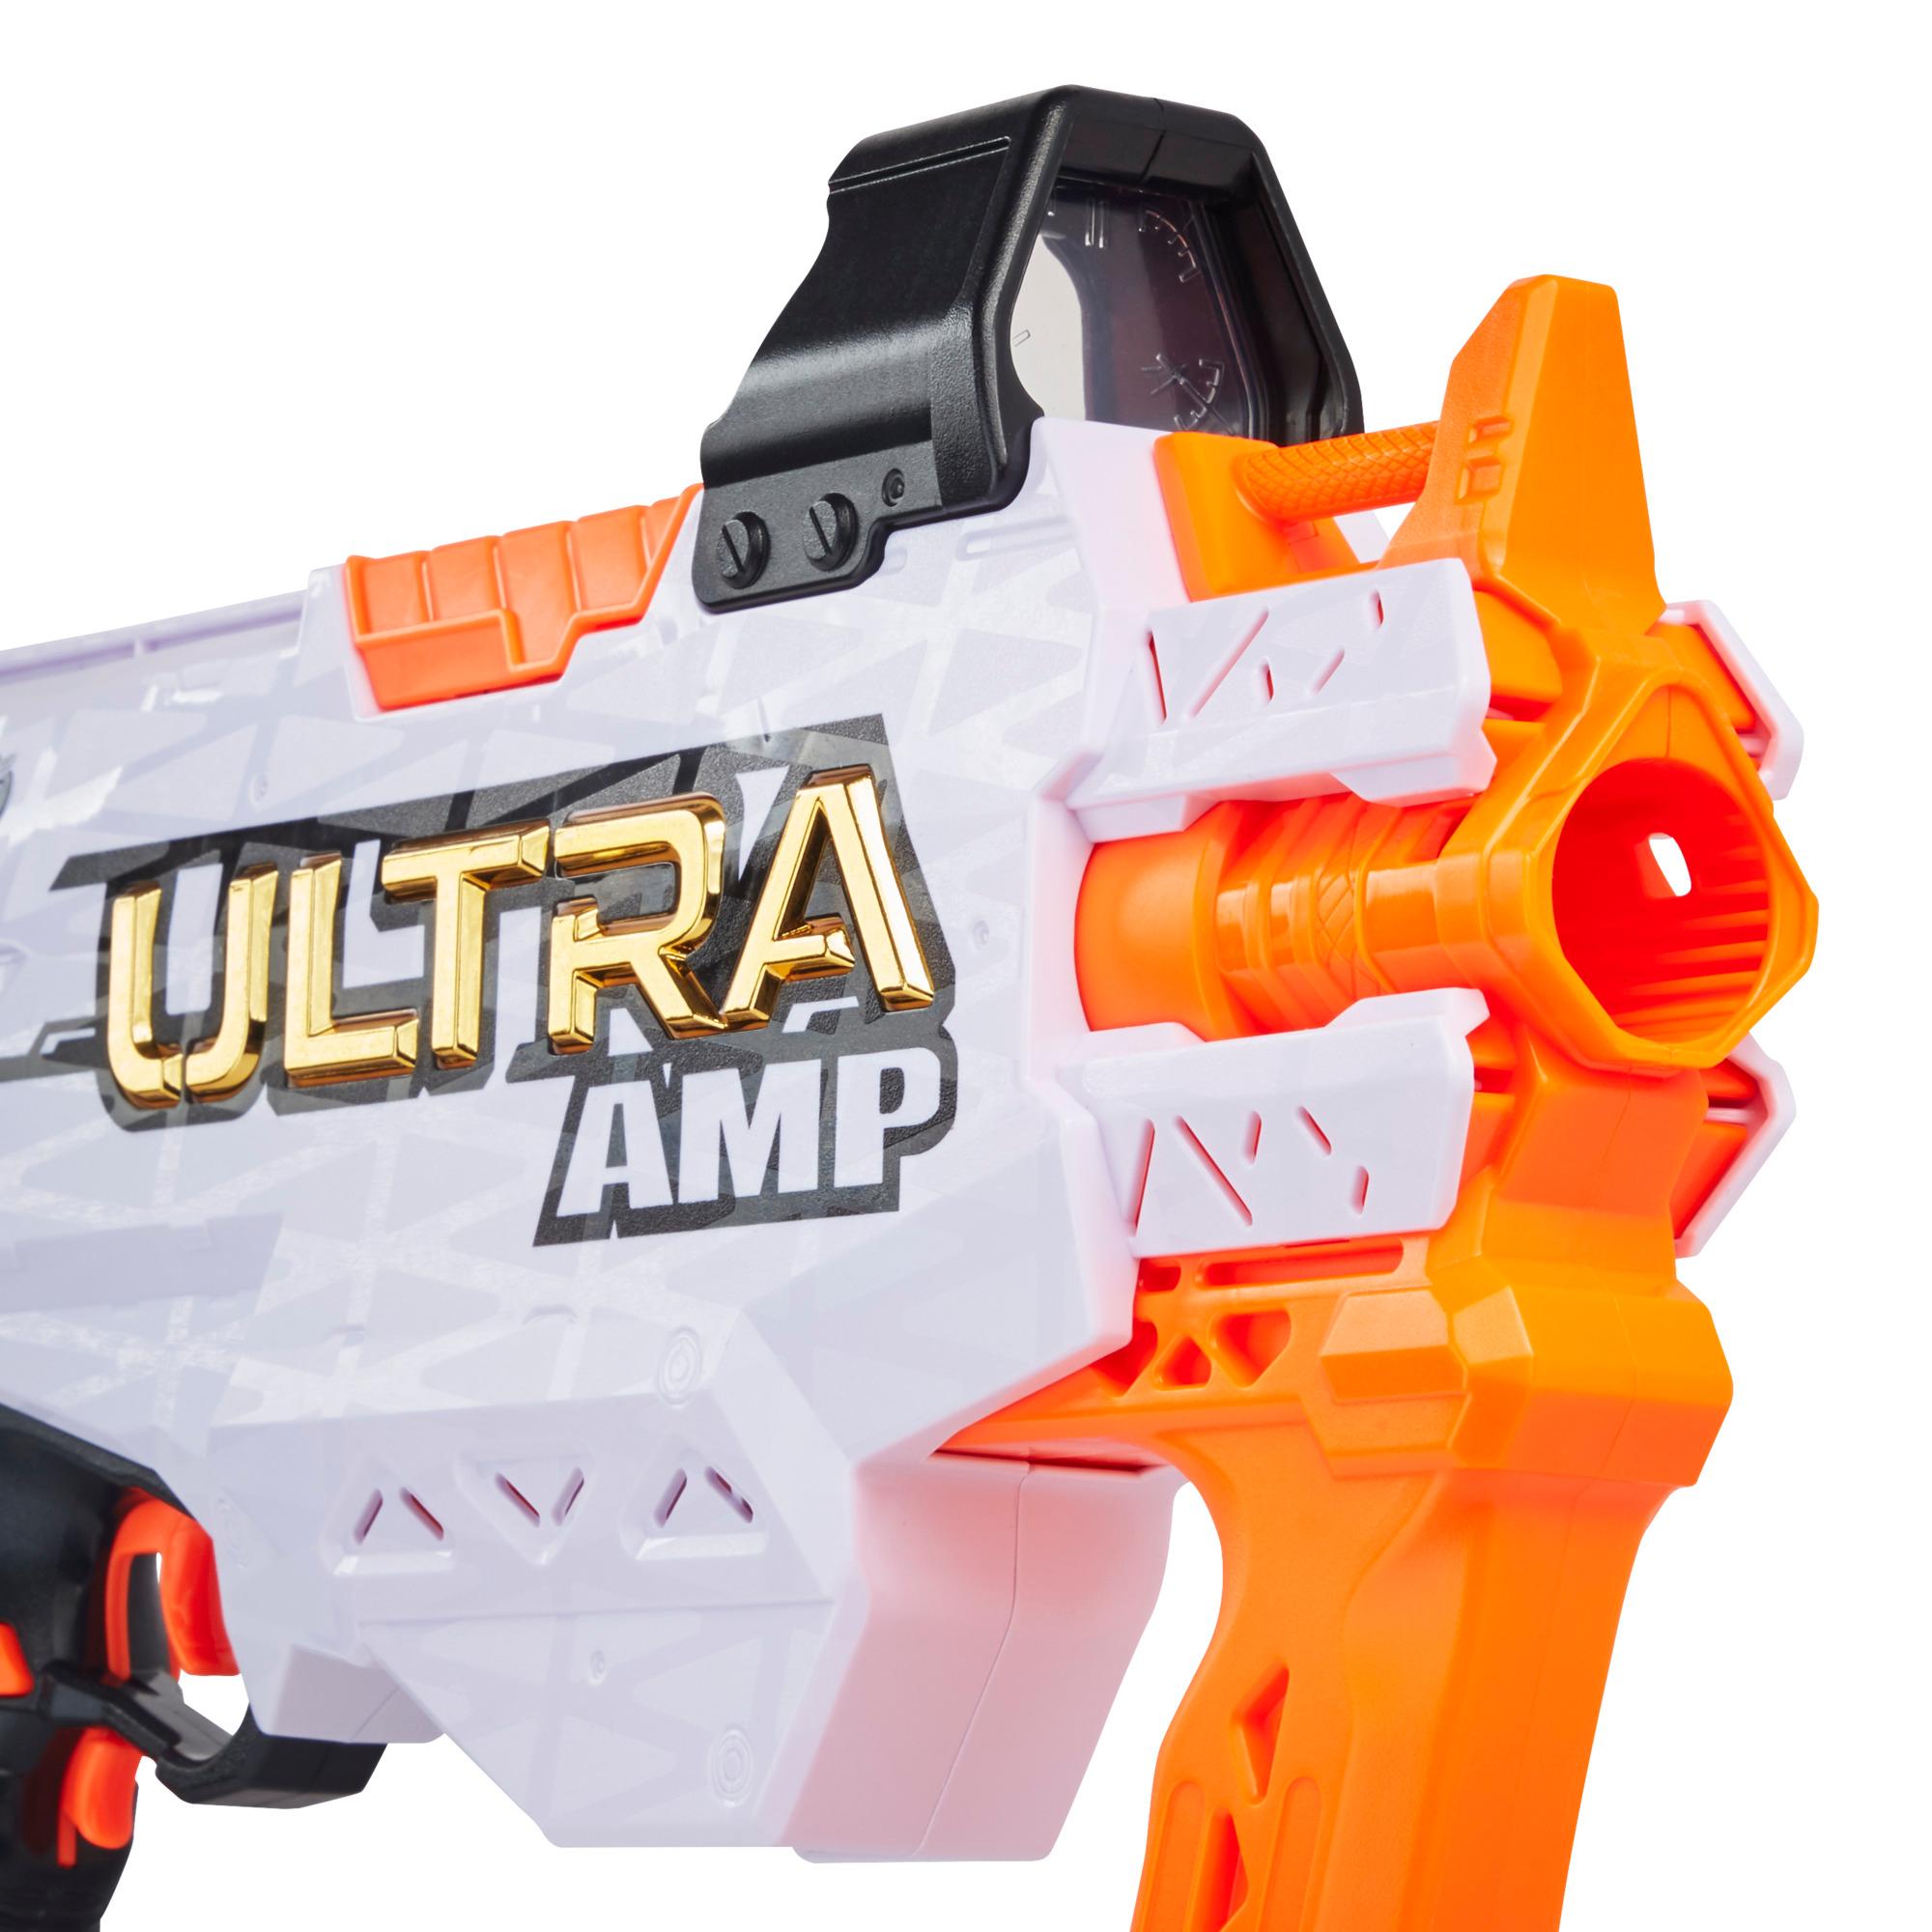 Nerf Ultra Amp, Blaster motorisé, chargeur 6 fléchettes, 6 fléchettes, compatible uniquement avec fléchettes Nerf Ultra